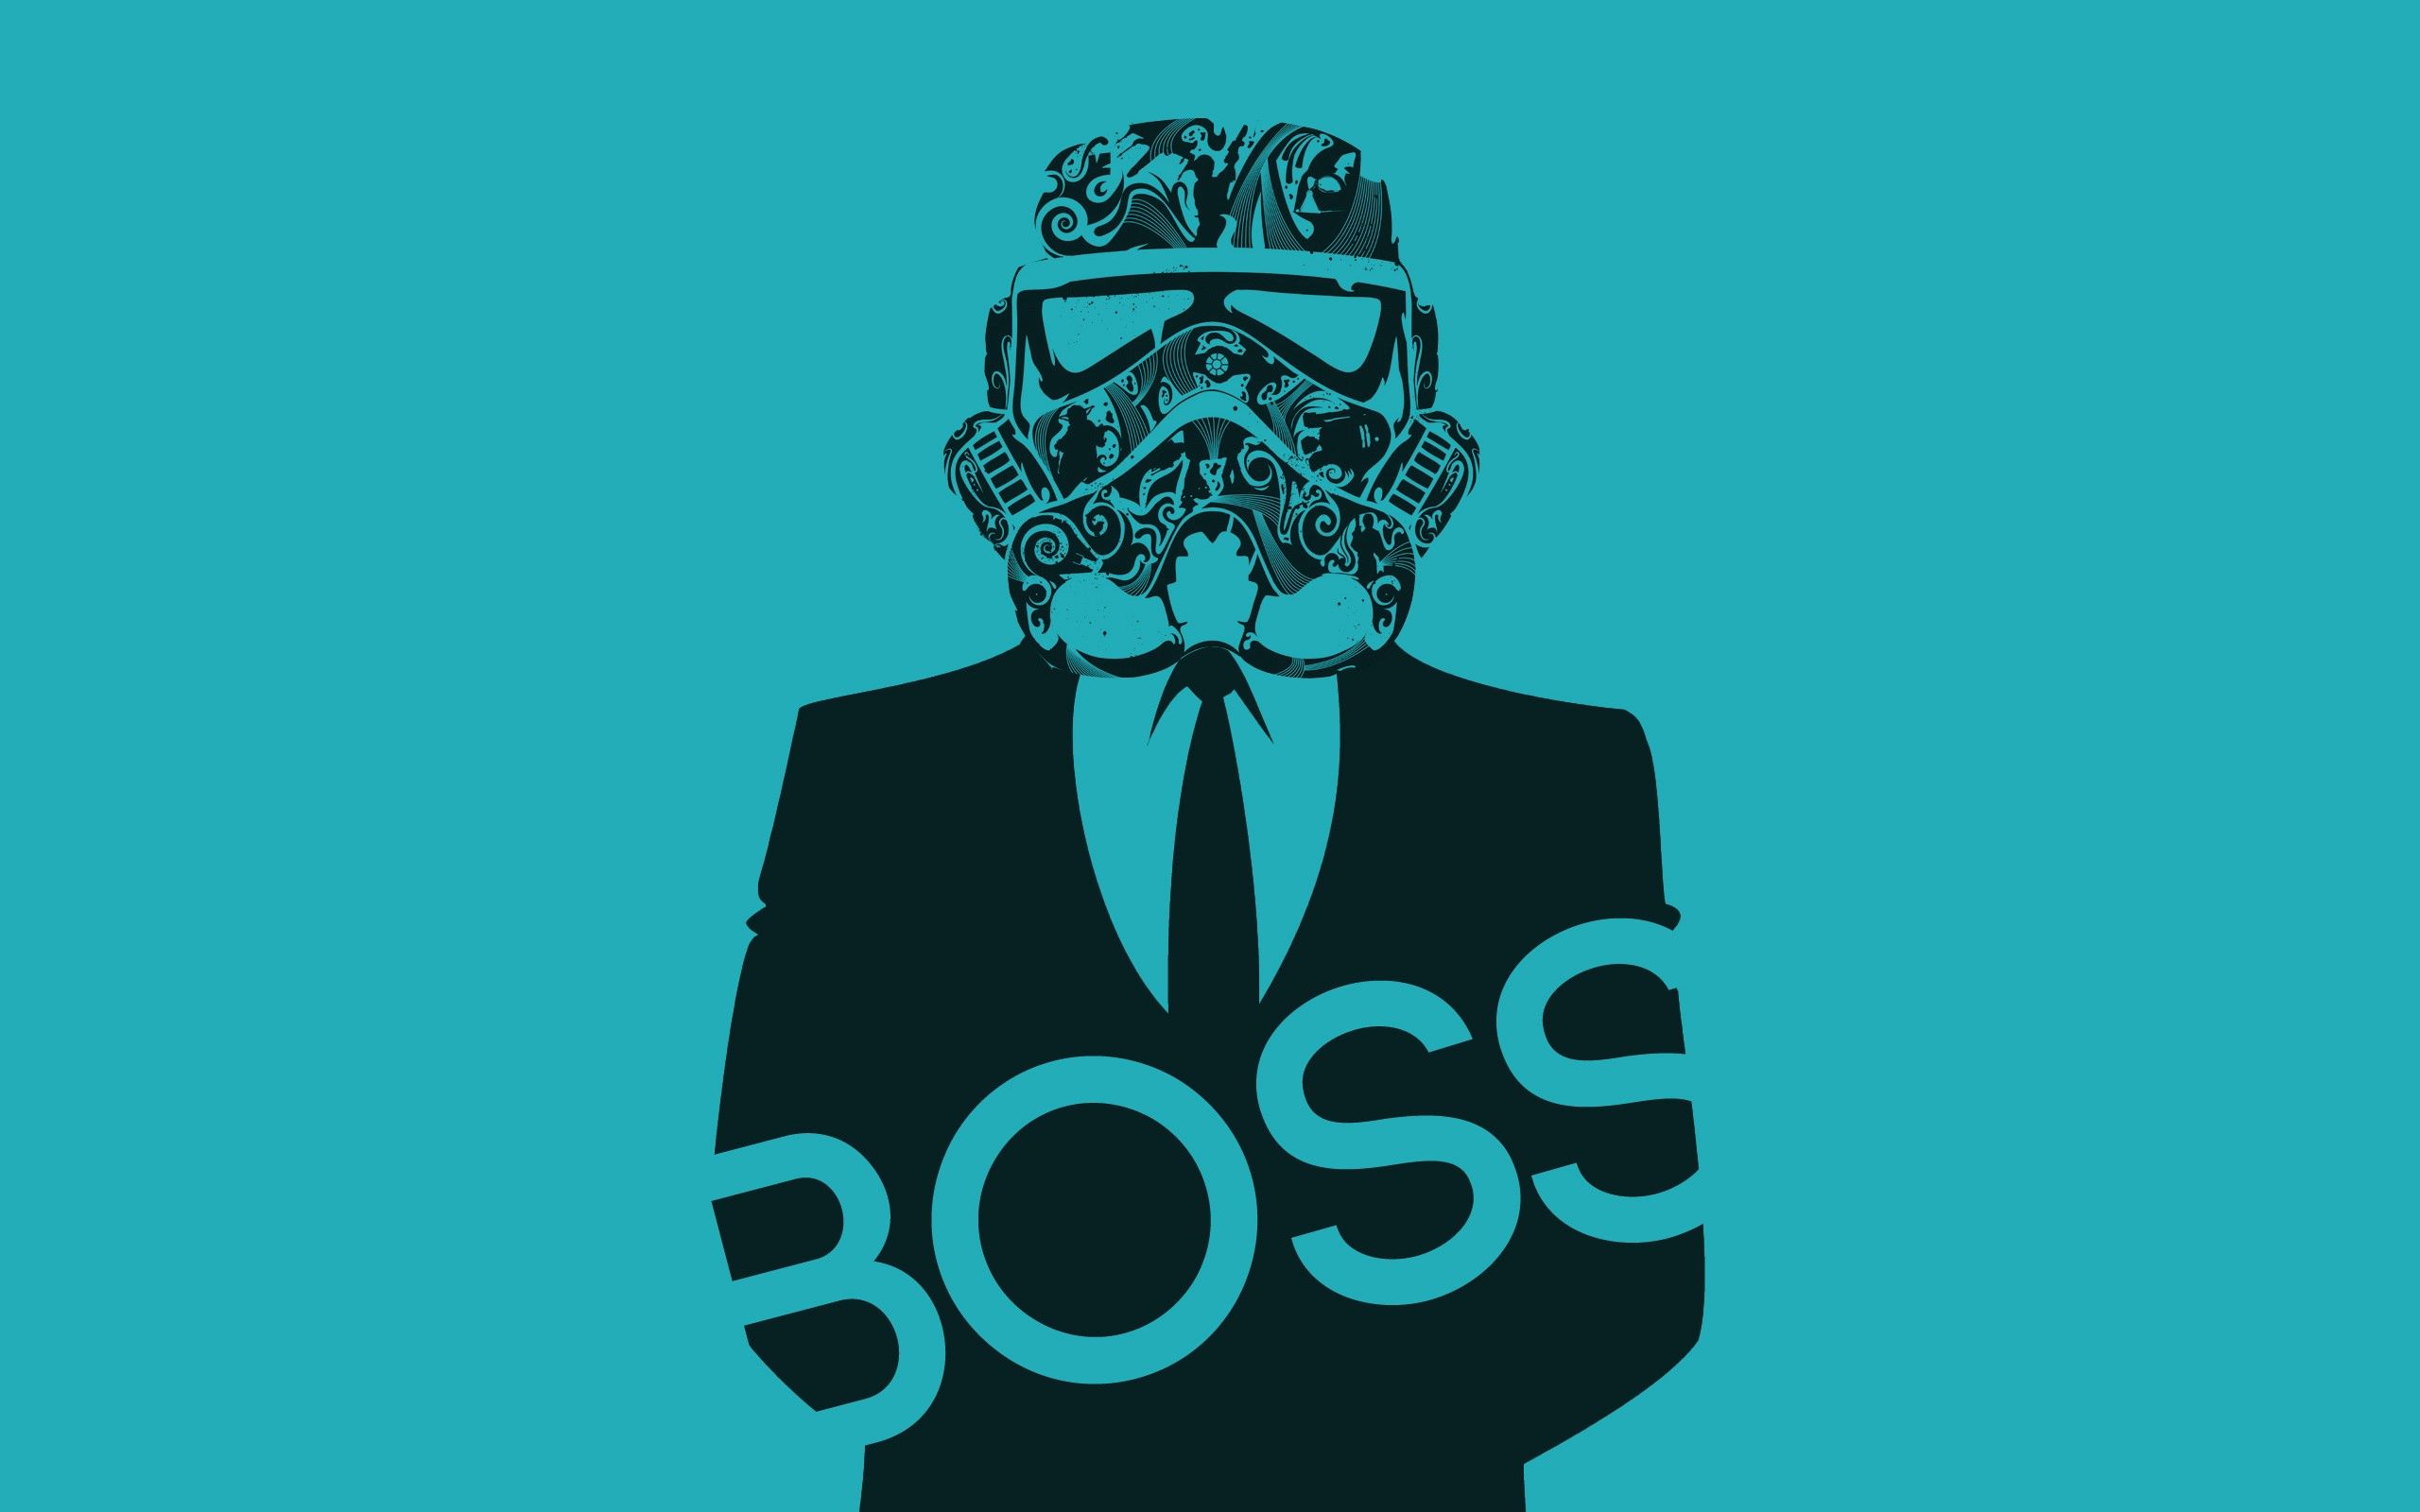 Star Wars boss Storm Trooper wallpaper | 2560x1600 | 59127 ...